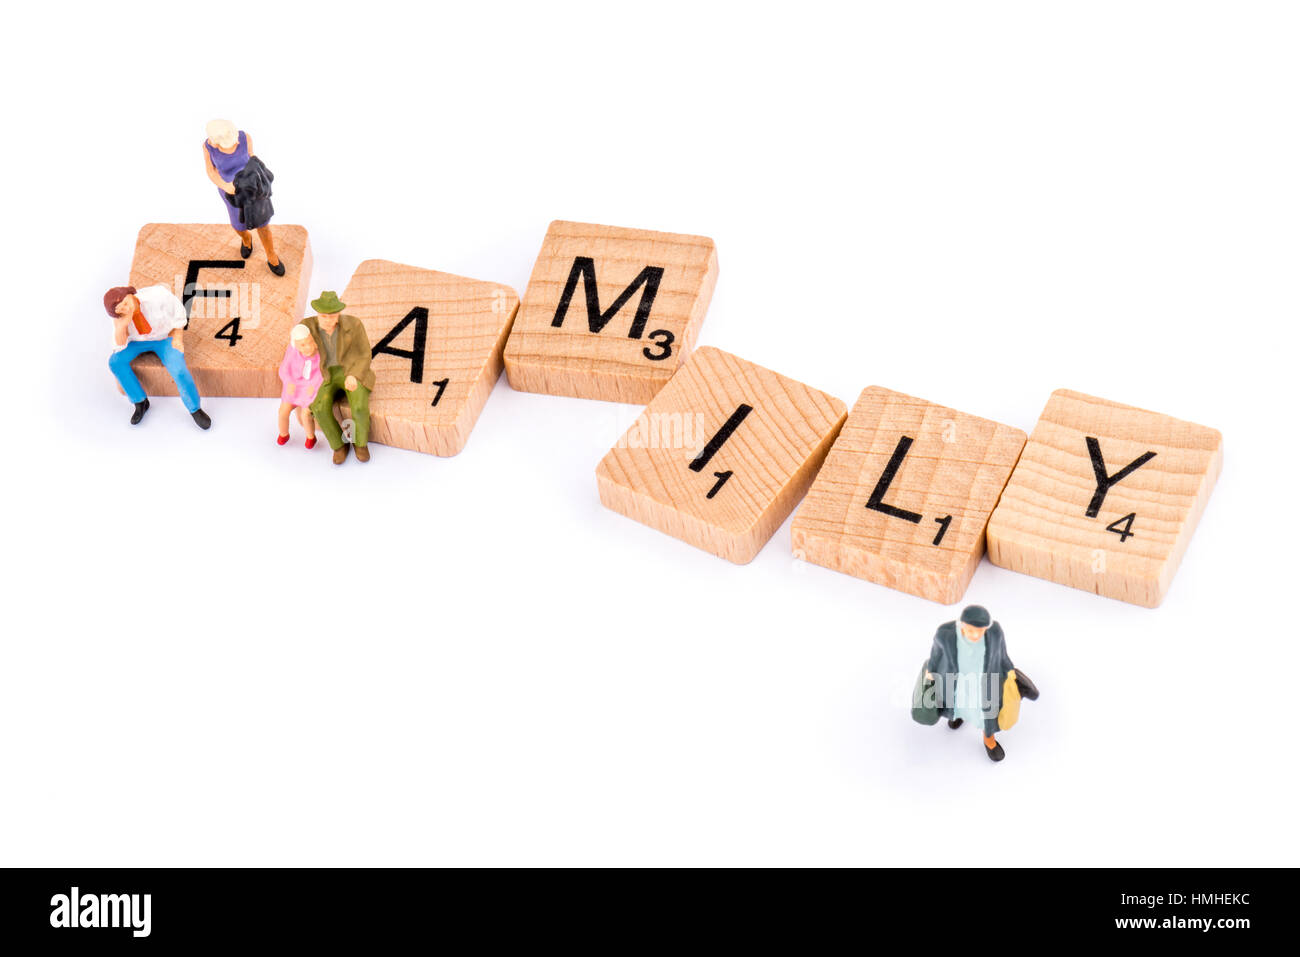 Scrabble Buchstaben bilden das Wort Familie. Zahlen belegen die Buchstaben F und A, während eine ältere Dame Weg von der Buchstabe Y geht. Stockfoto